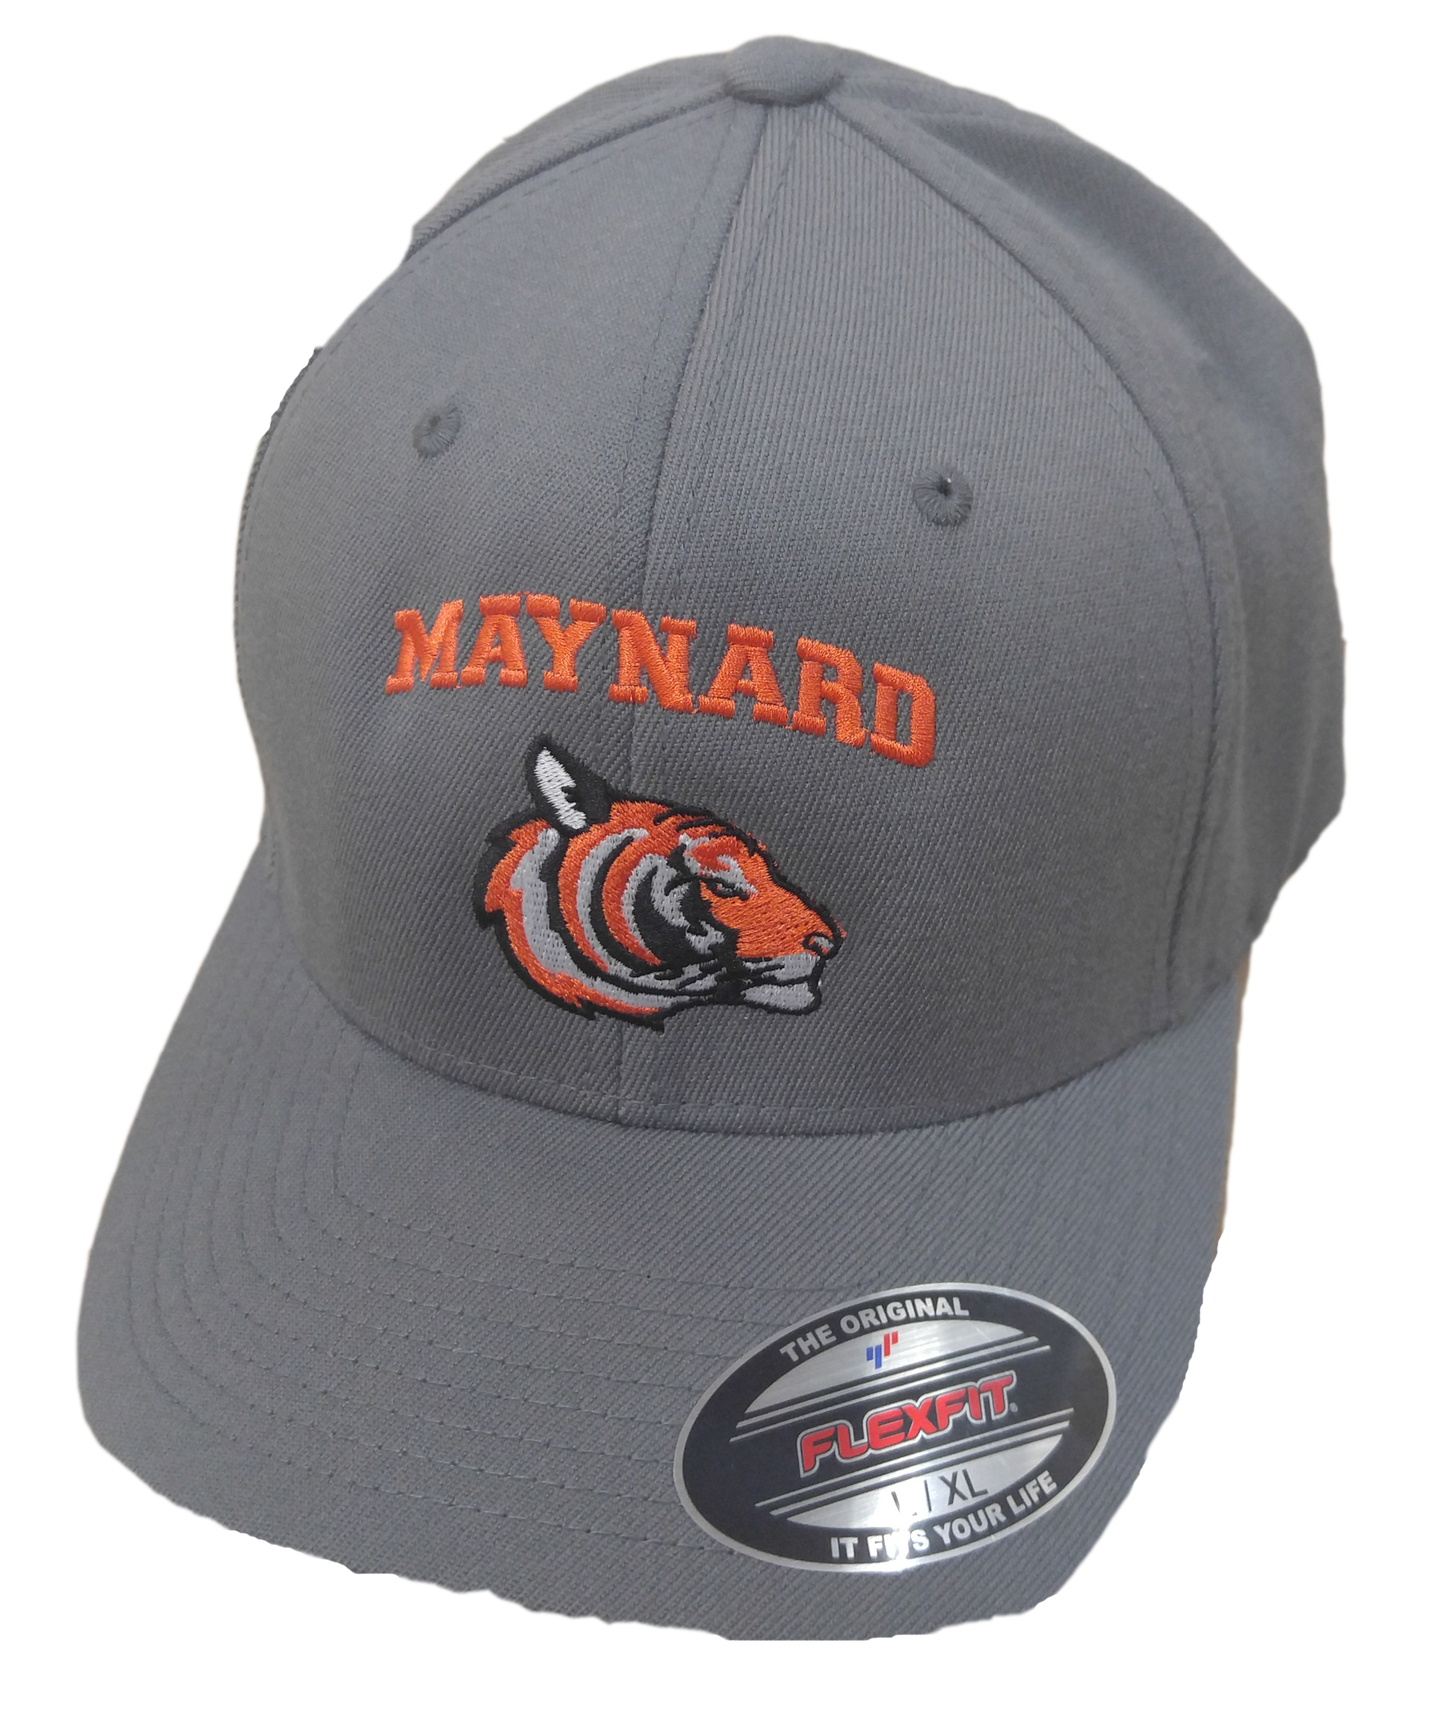 Maynard Tigers Alternate Hat Grey Flexfit 6377